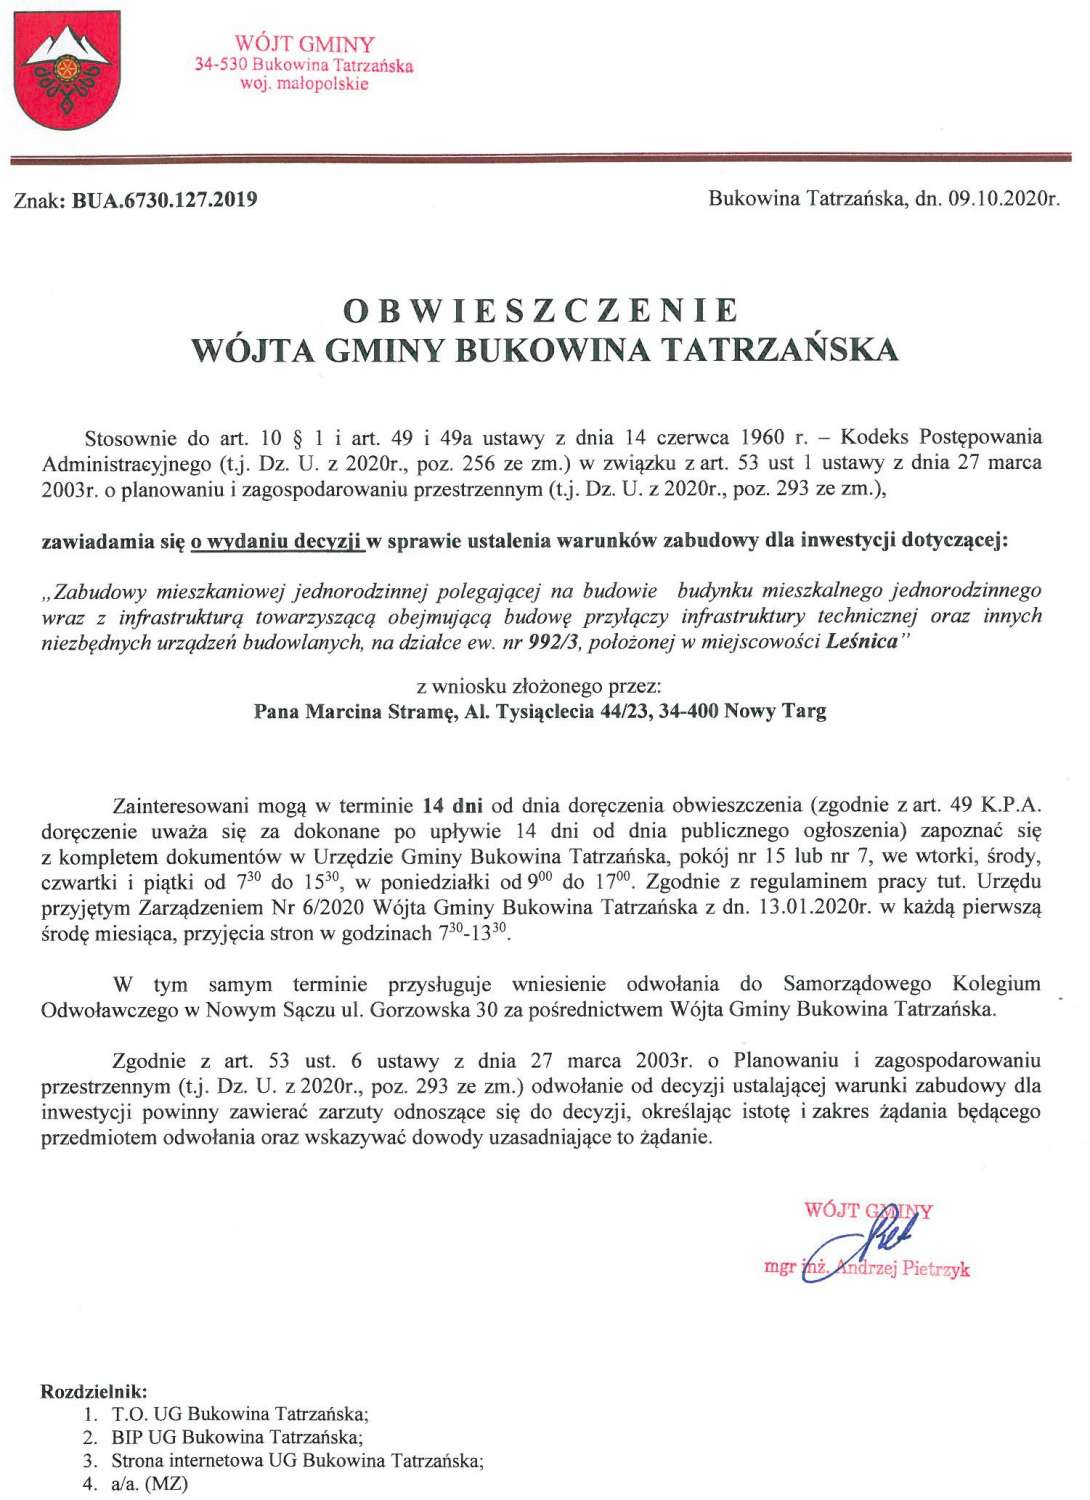 Obwieszczenie Wójta Gminy Bukowina Tatrzańska BUA 6730.127.2019